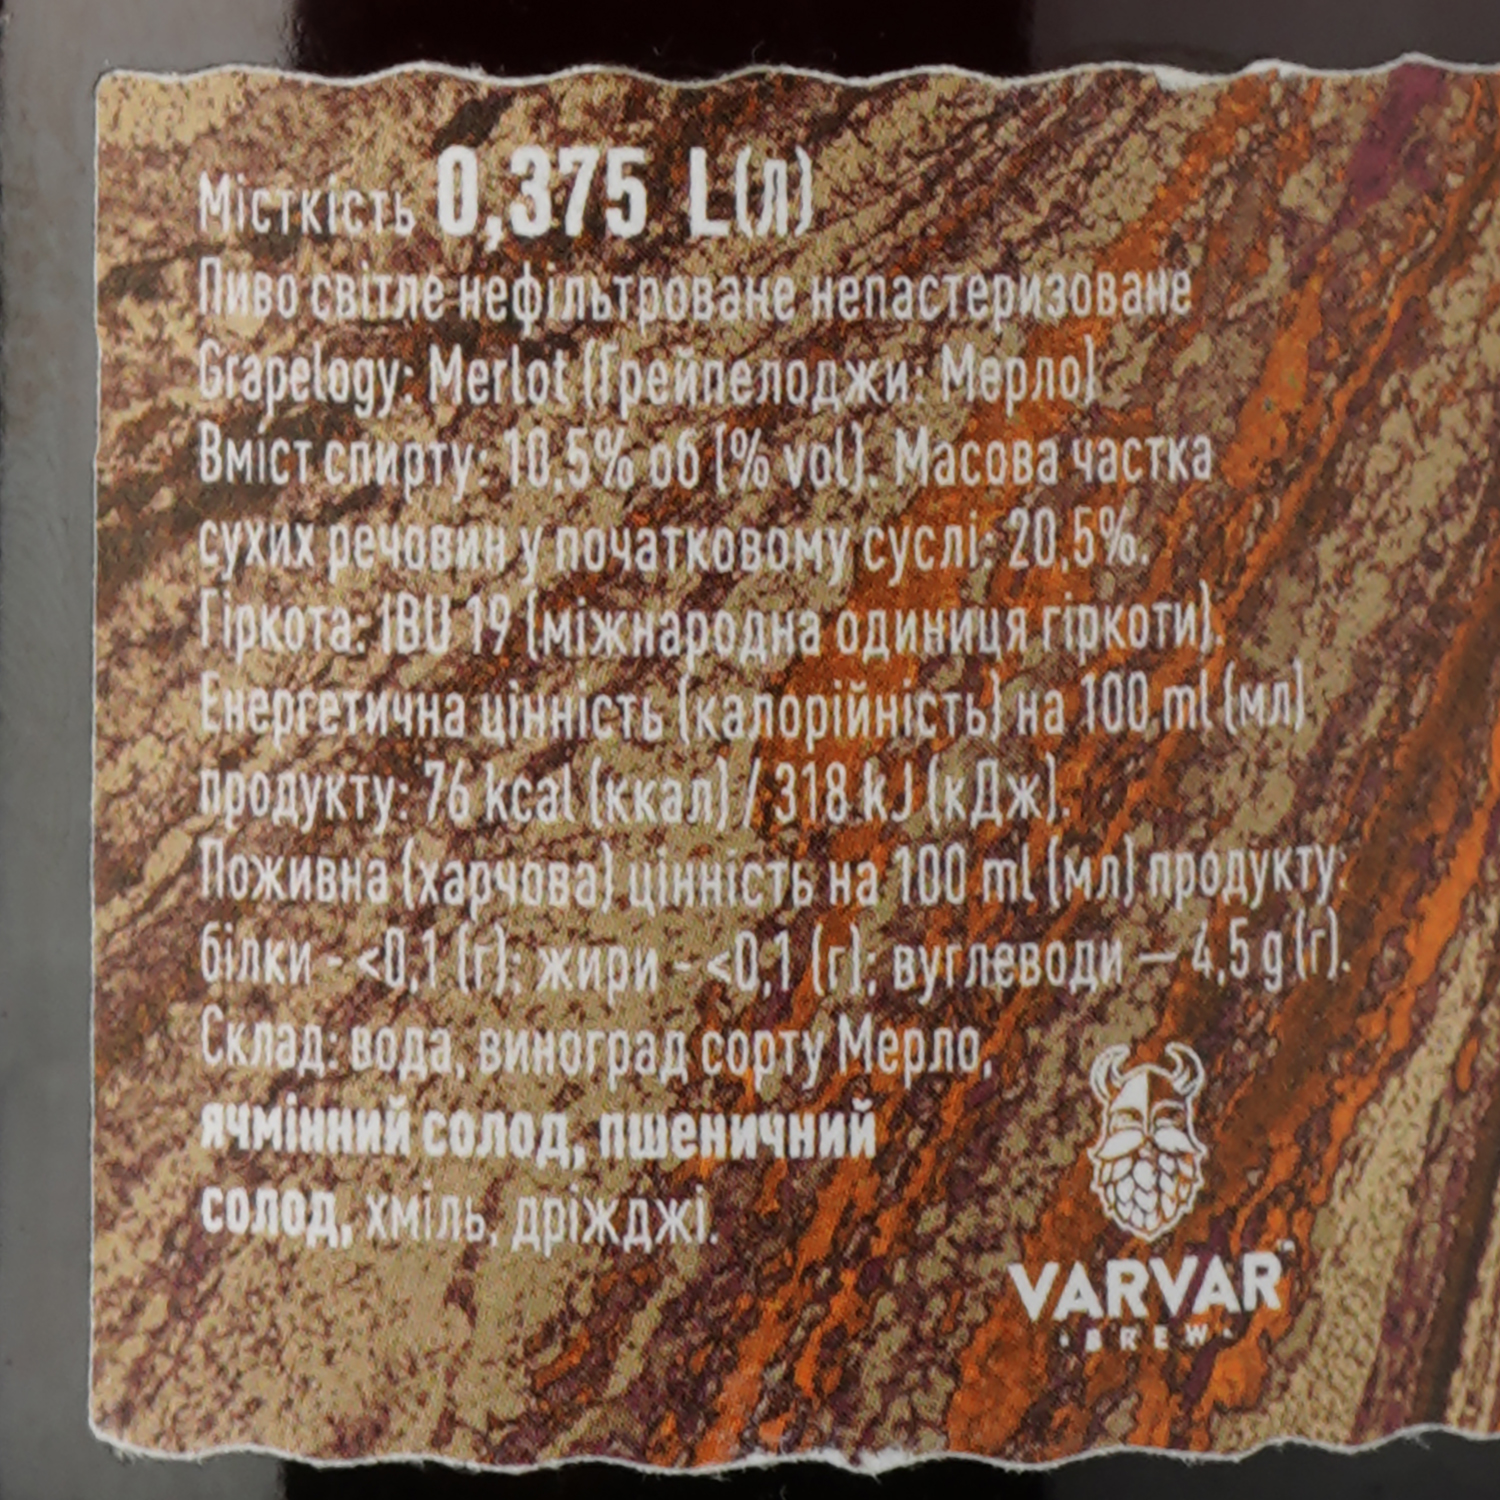 Пиво Varvar Grapelogy Merlot, темне, 10,5%, 0,375 л - фото 5